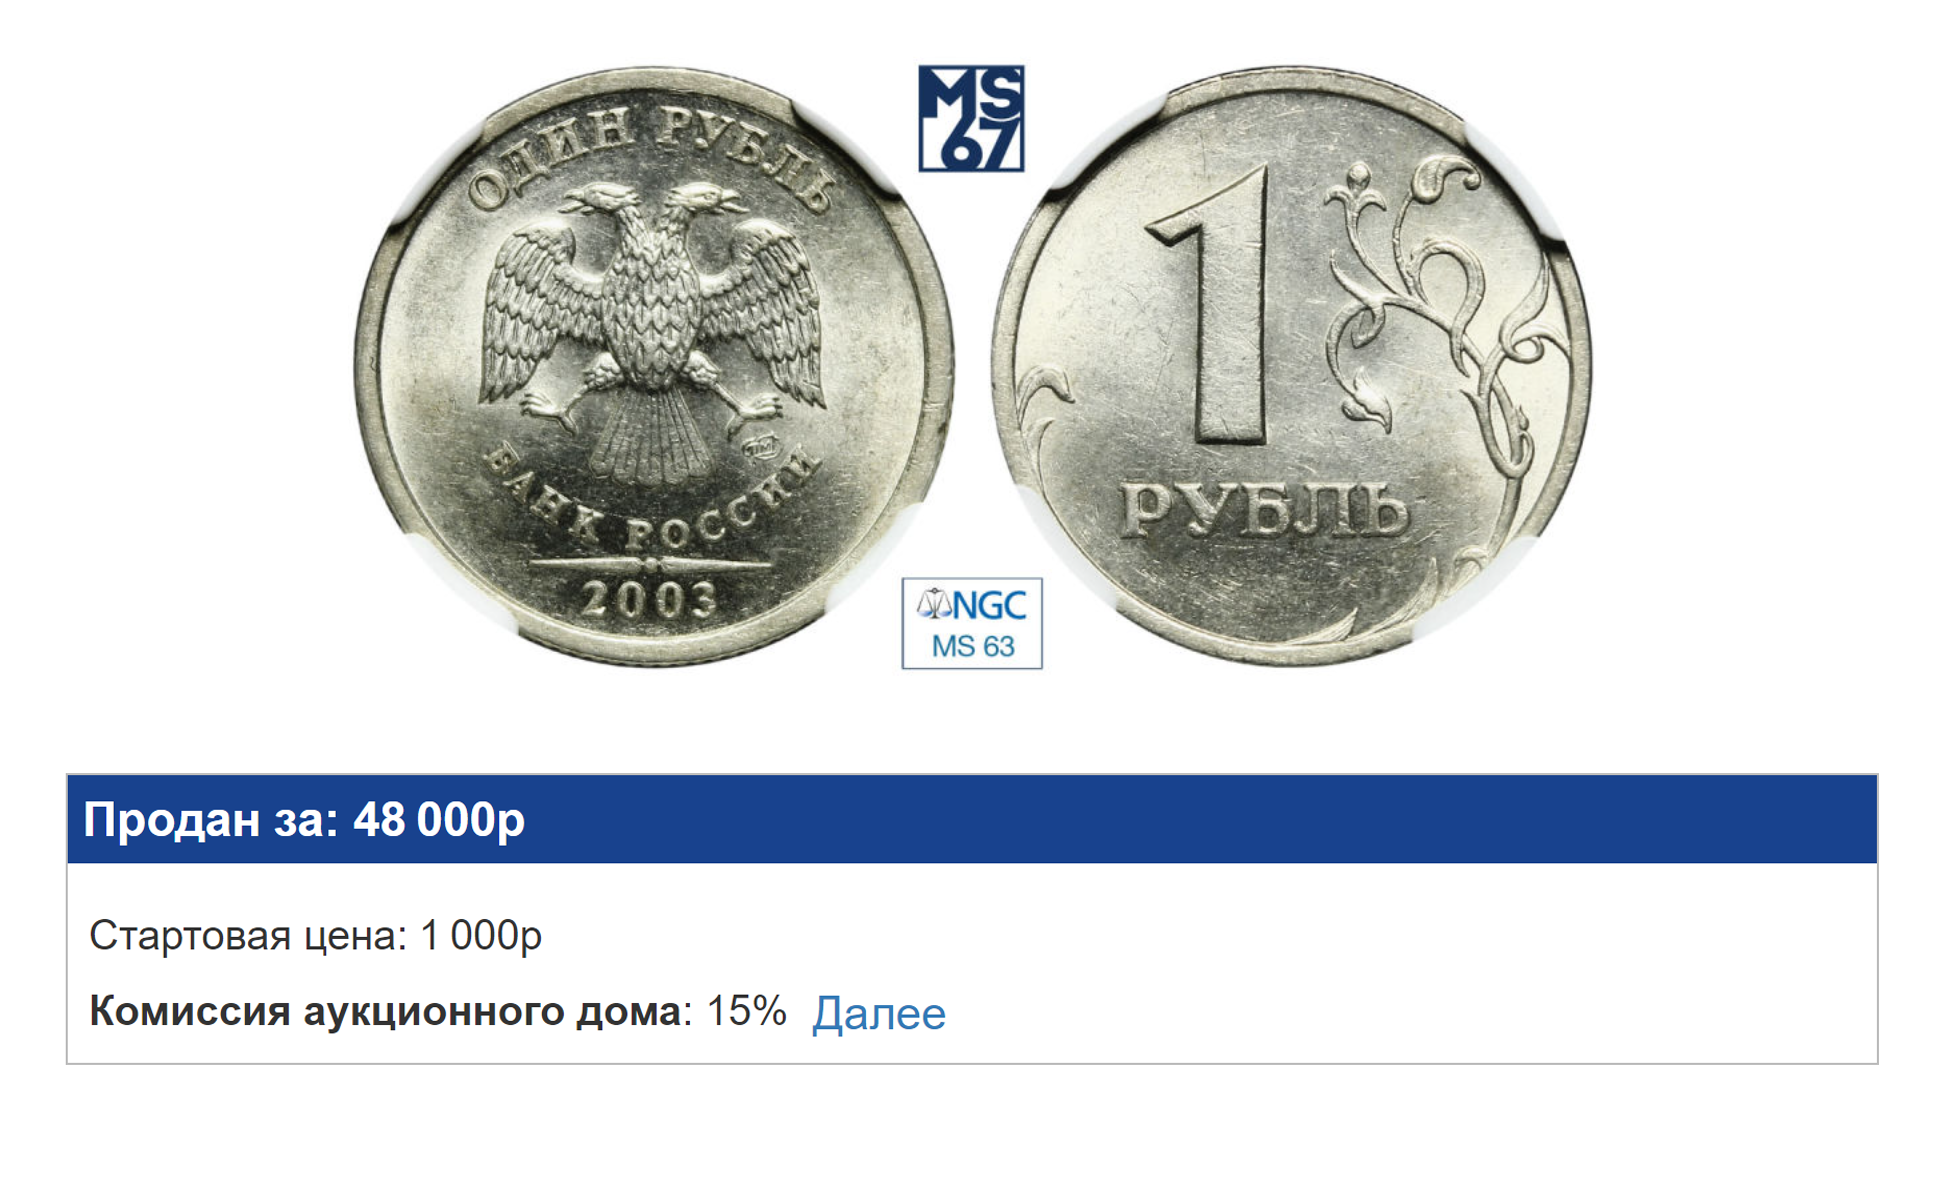 ⭐ ⭐ ⭐ ⭐ ⭐ Список биметаллических монет 10 рублей , гг. — фото, каталожный номер, цены